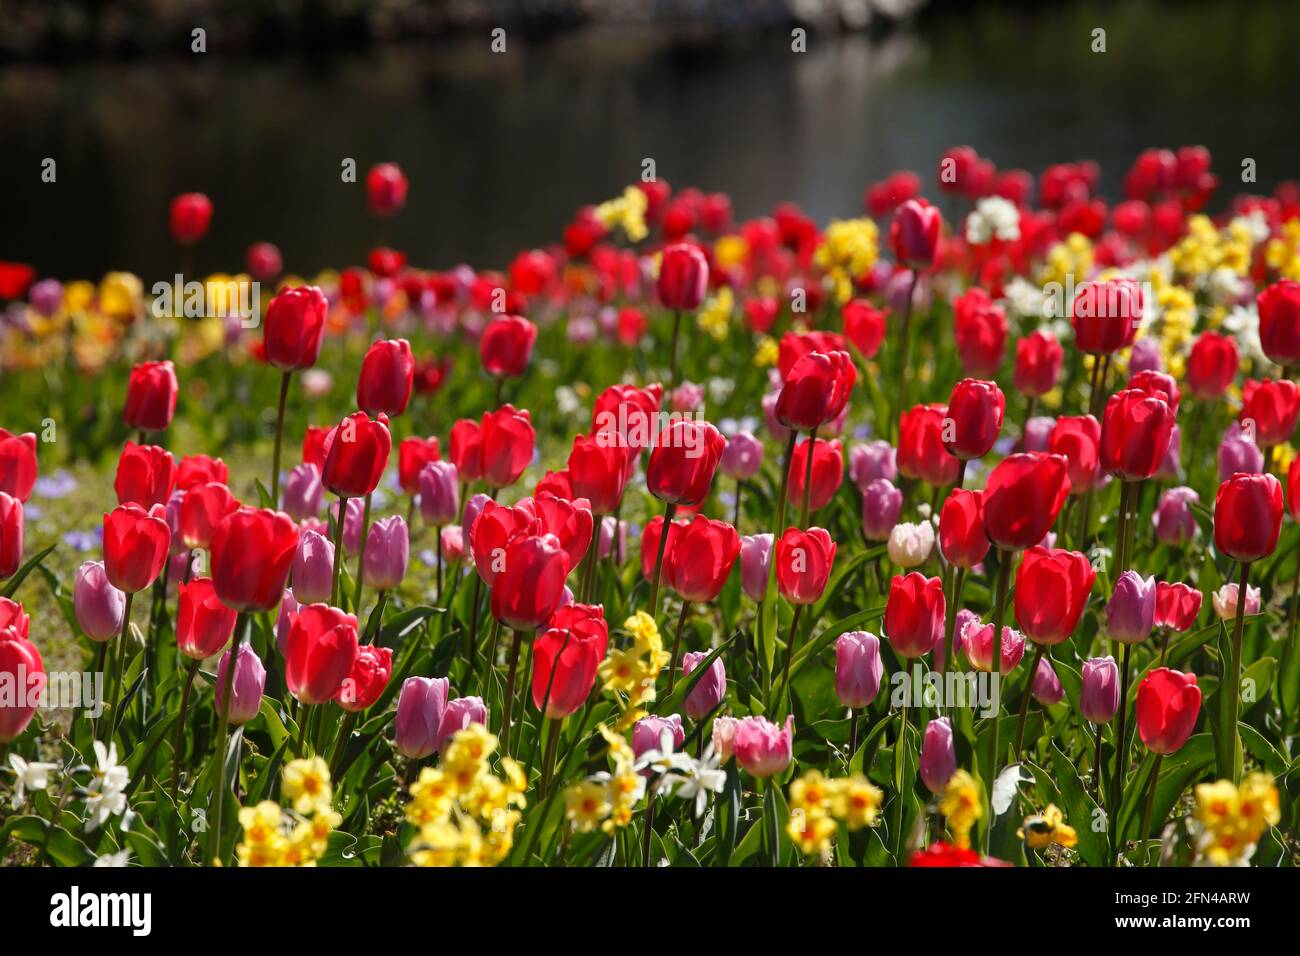 bunt blühendeTulpen,  (Tulipa), Blumenbeet an einem Gewässer,  Deutschland Stock Photo